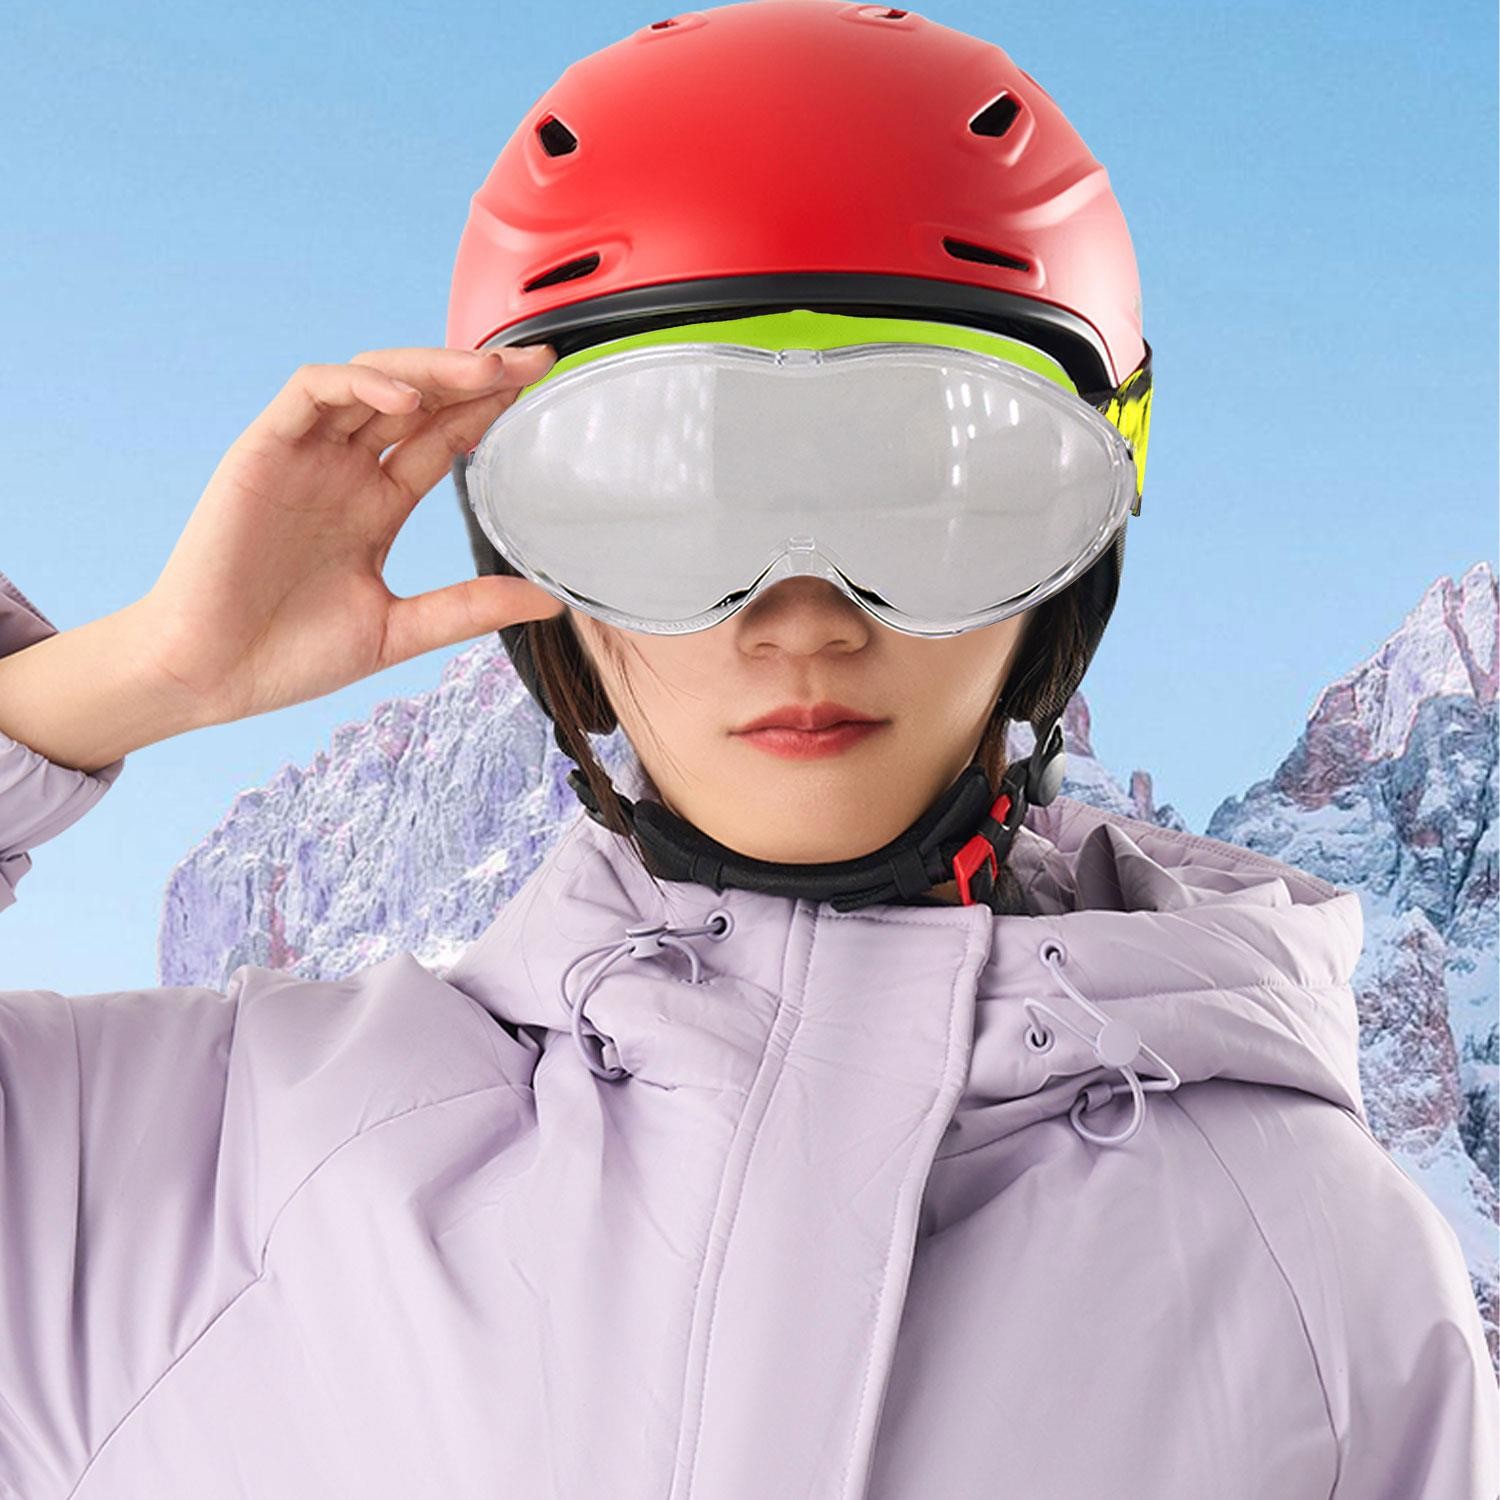 Bellasimo Çerçevesiz Kayak Gözlüğü Camı Lens Değiştirebilir Cam Antifog Güneş Kar Gözlük Camı Şeffaf